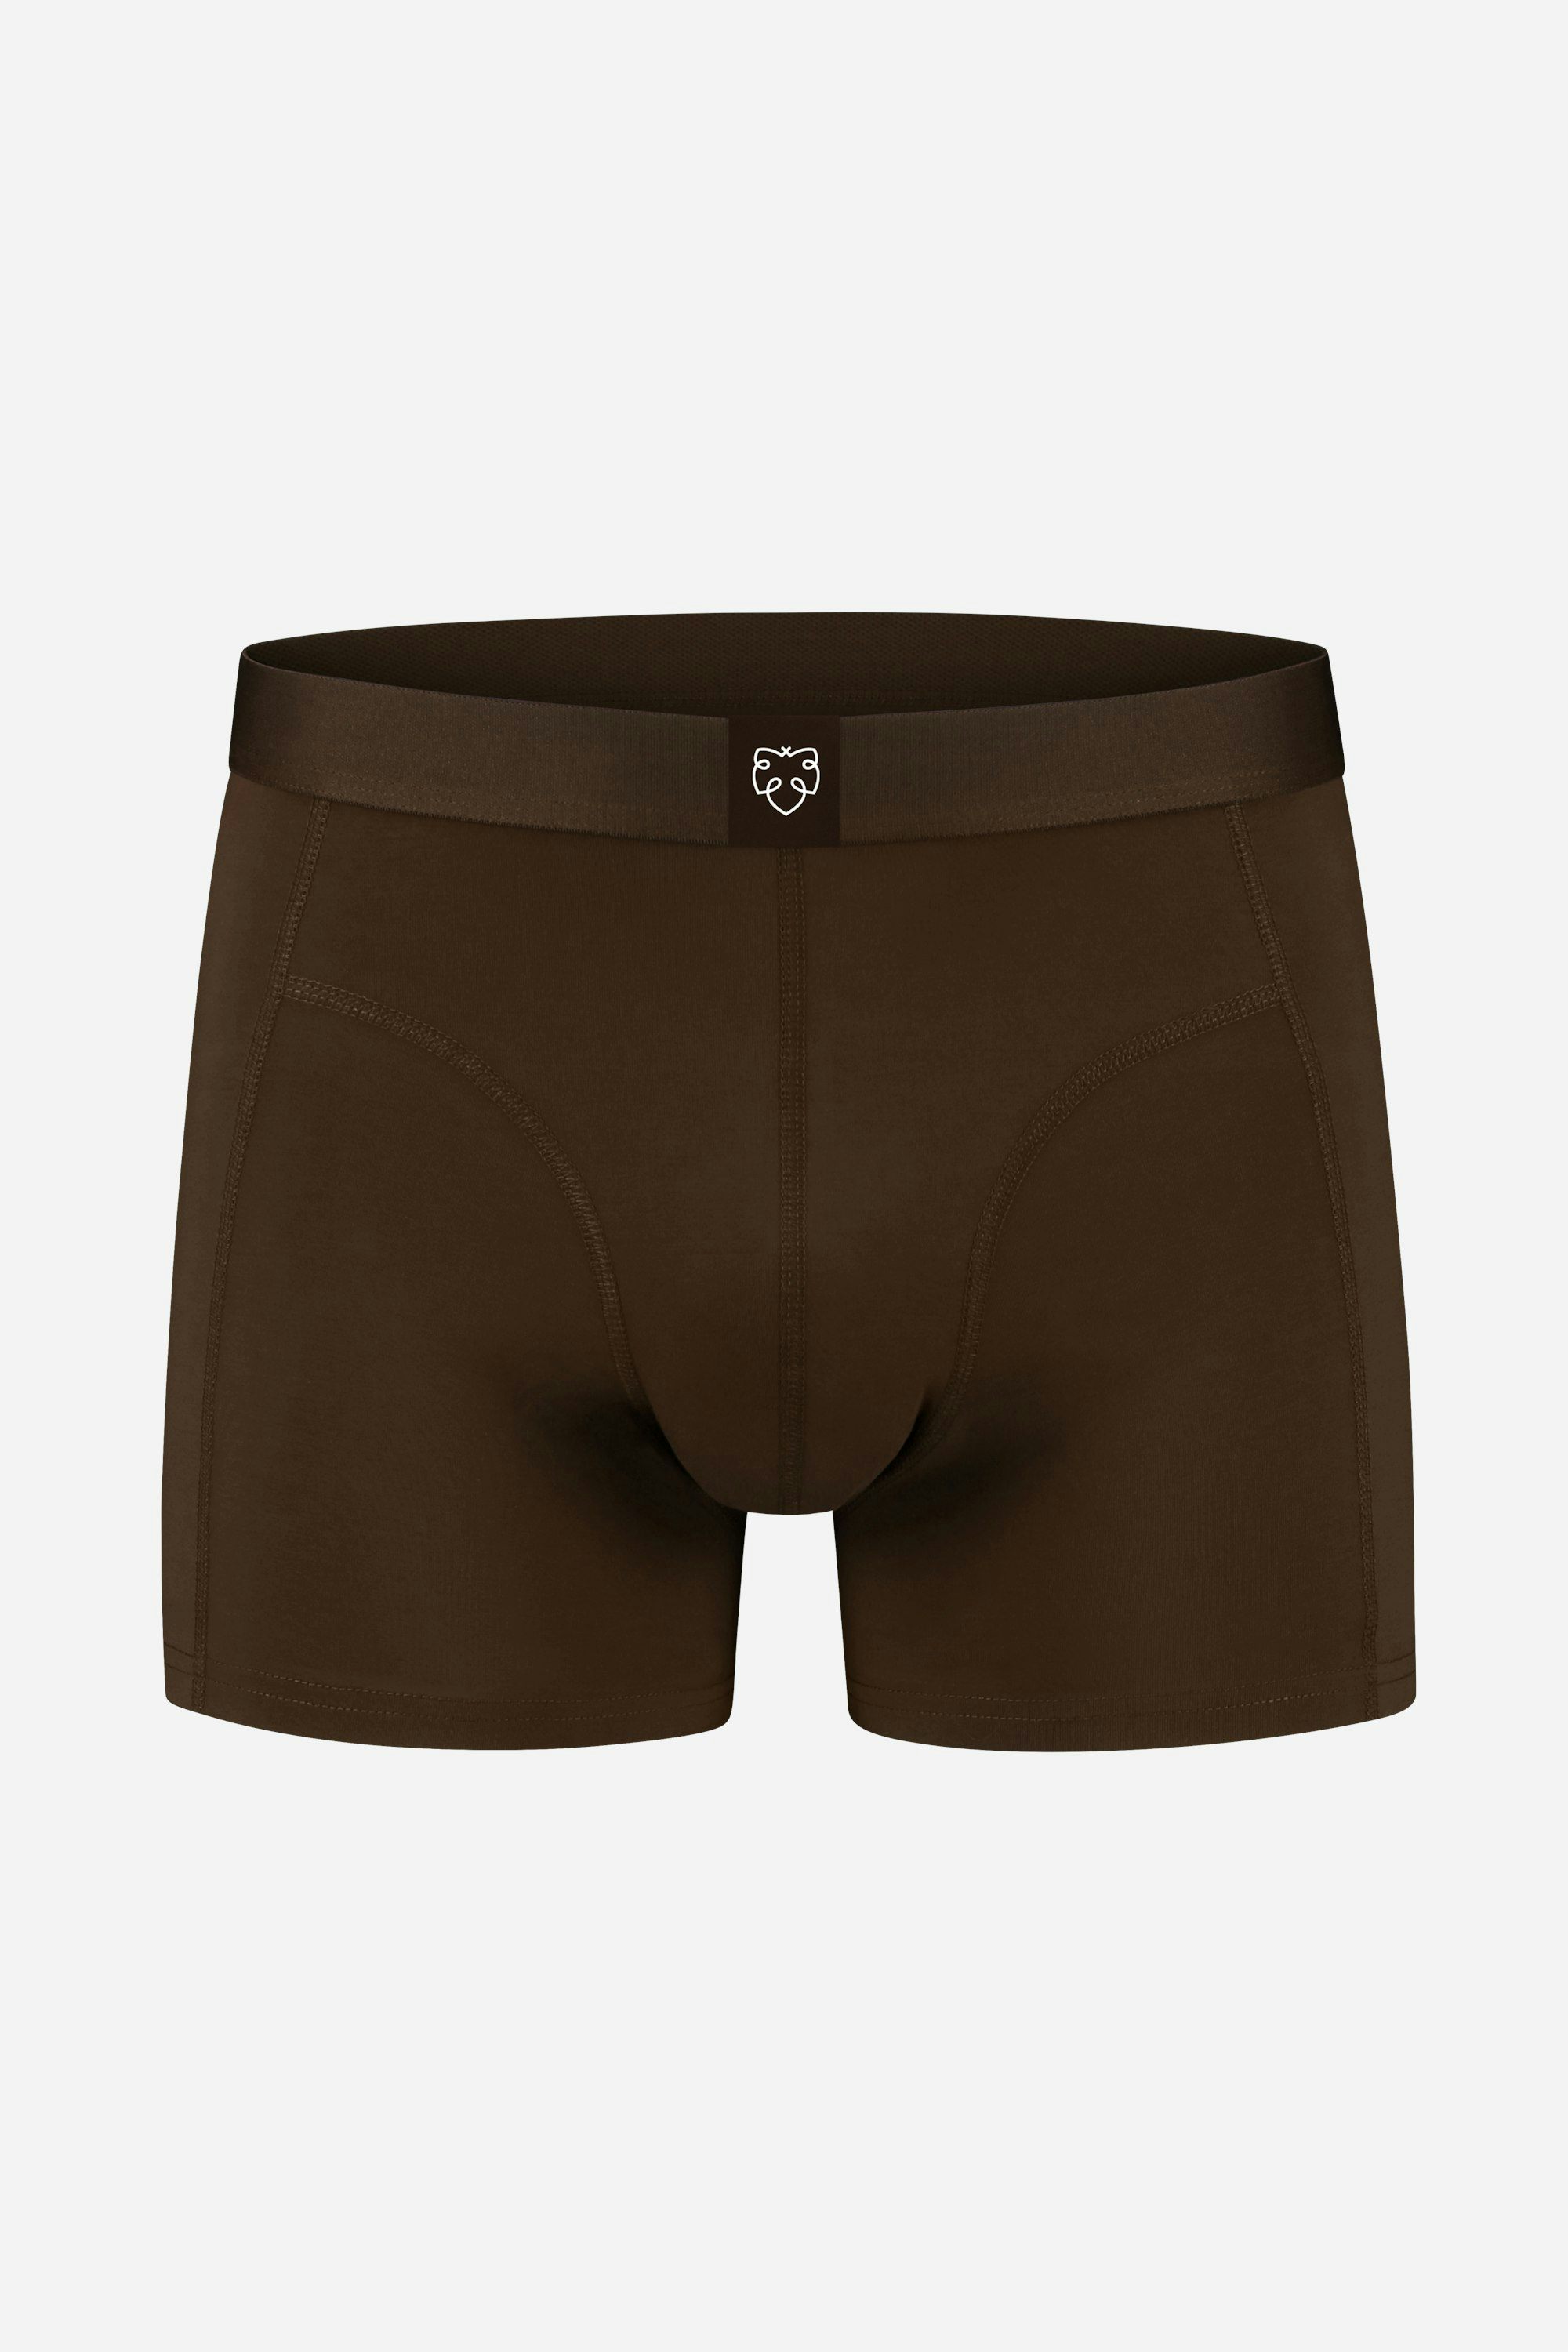 Brown, Men's Underwear, Boxers, Briefs, & Trunks